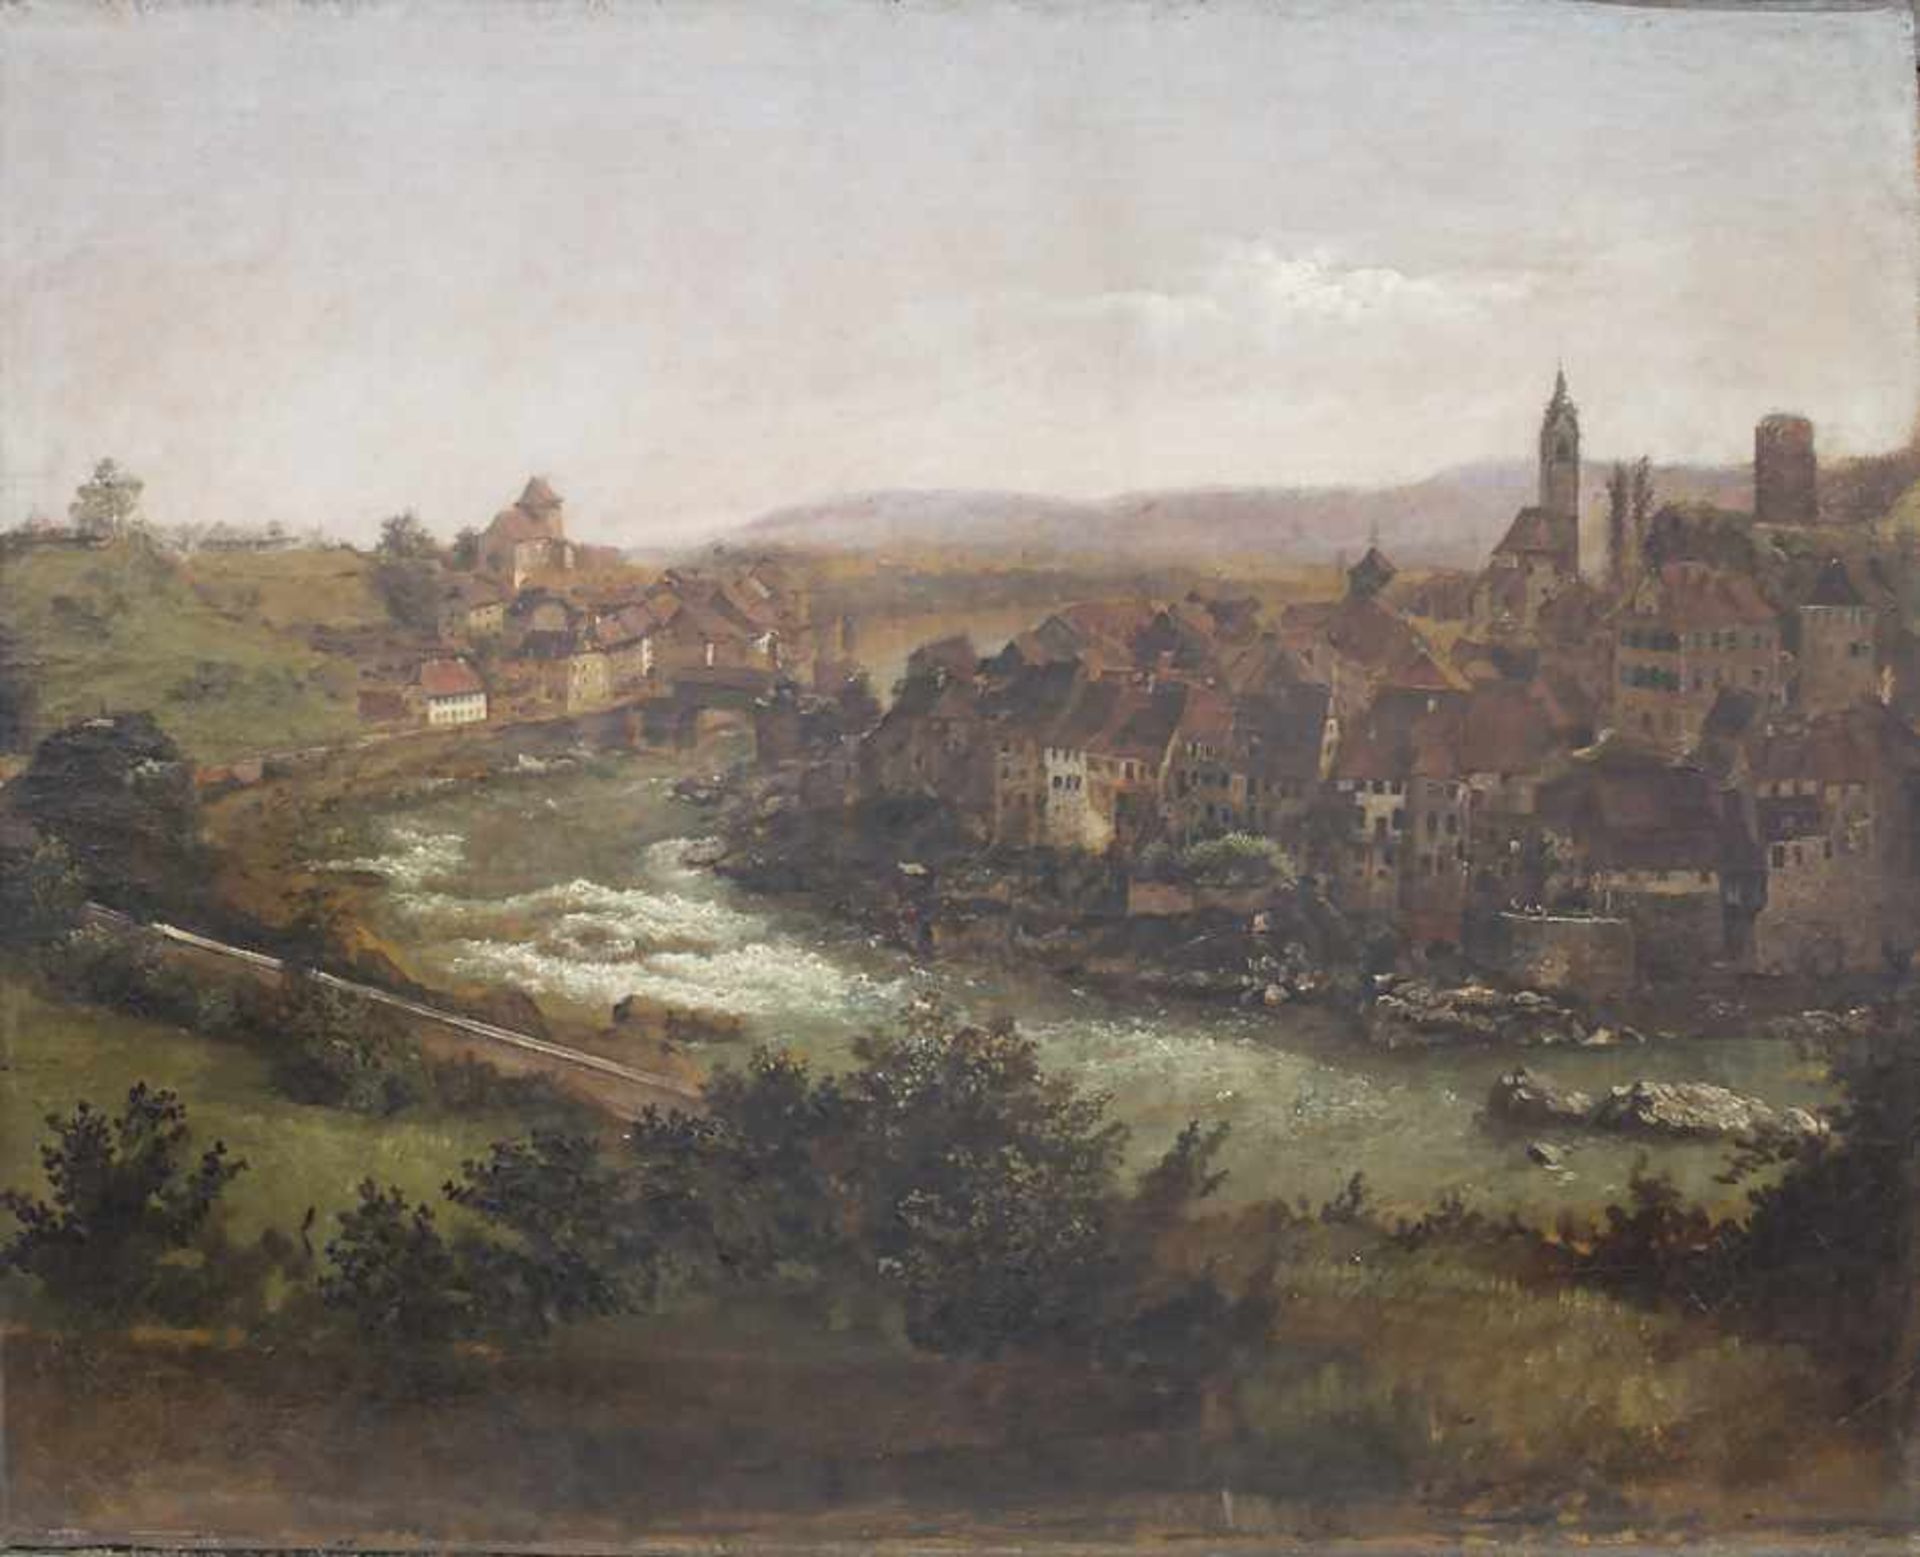 Künstler des 18. Jh., 'Blick auf eine Mittelalterstadt' / 'A view on a medieval town' - Bild 2 aus 6